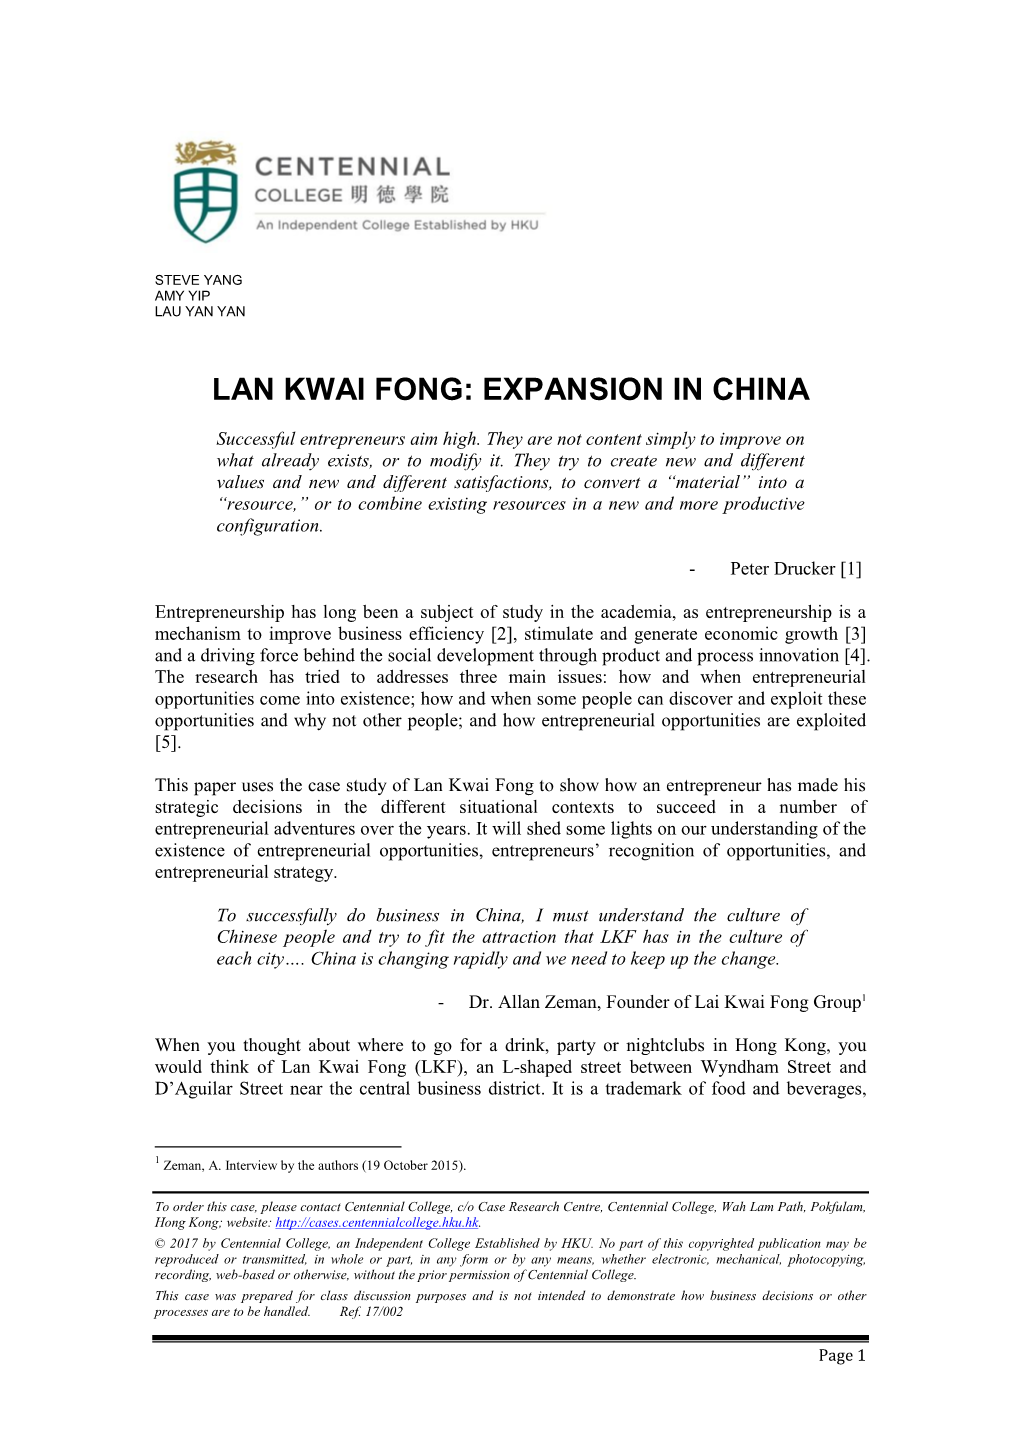 Lan Kwai Fong: Expansion in China